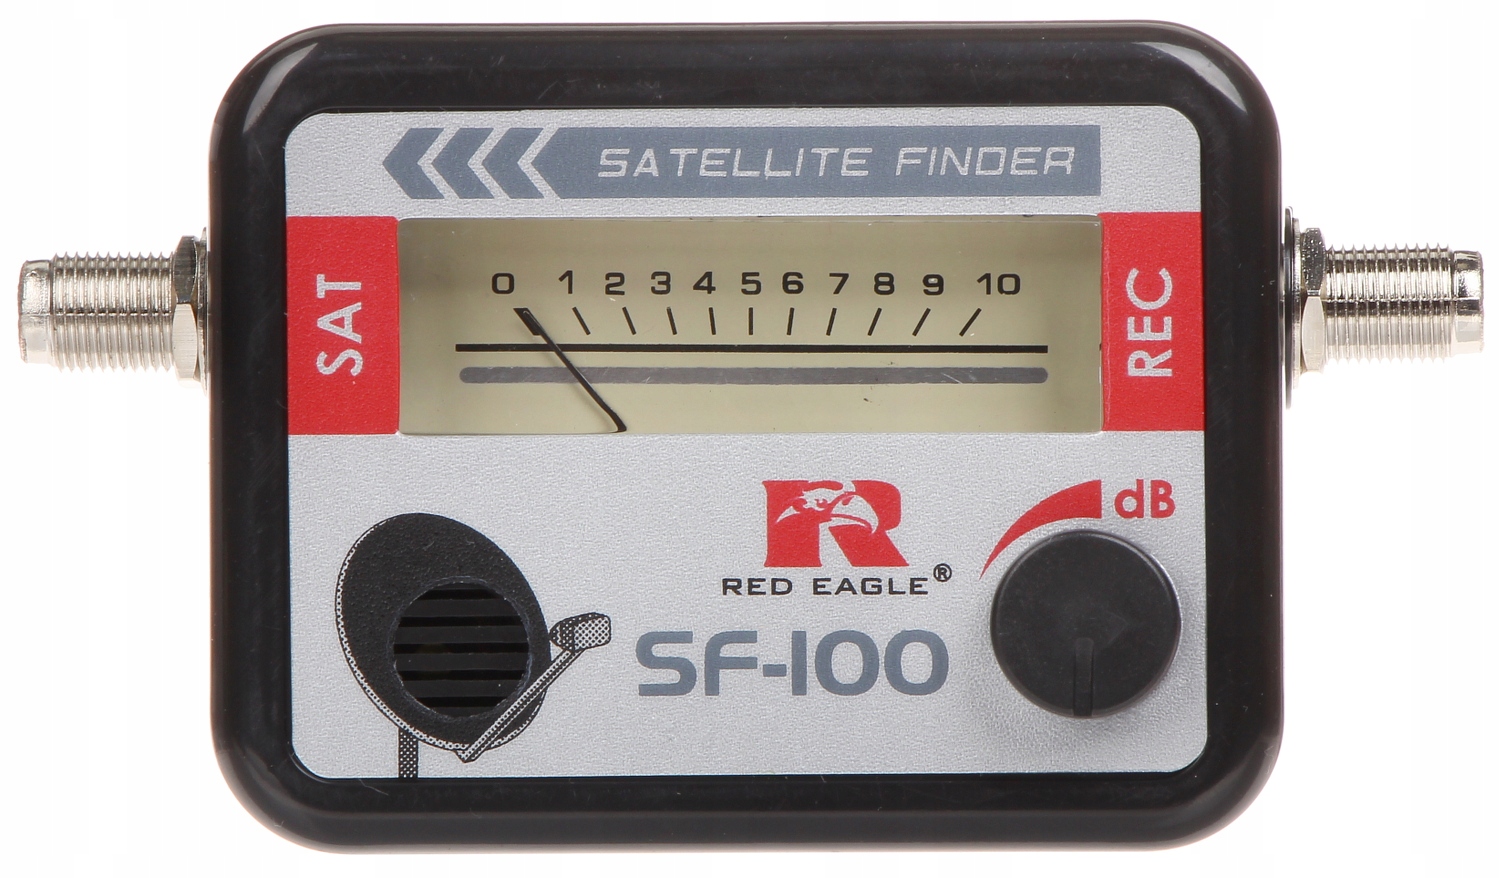 Satellite Finder SF-c100. Индикатор спутникового сигнала. Счетчик сигнал. Измеритель спутникового ТВ сигнала.